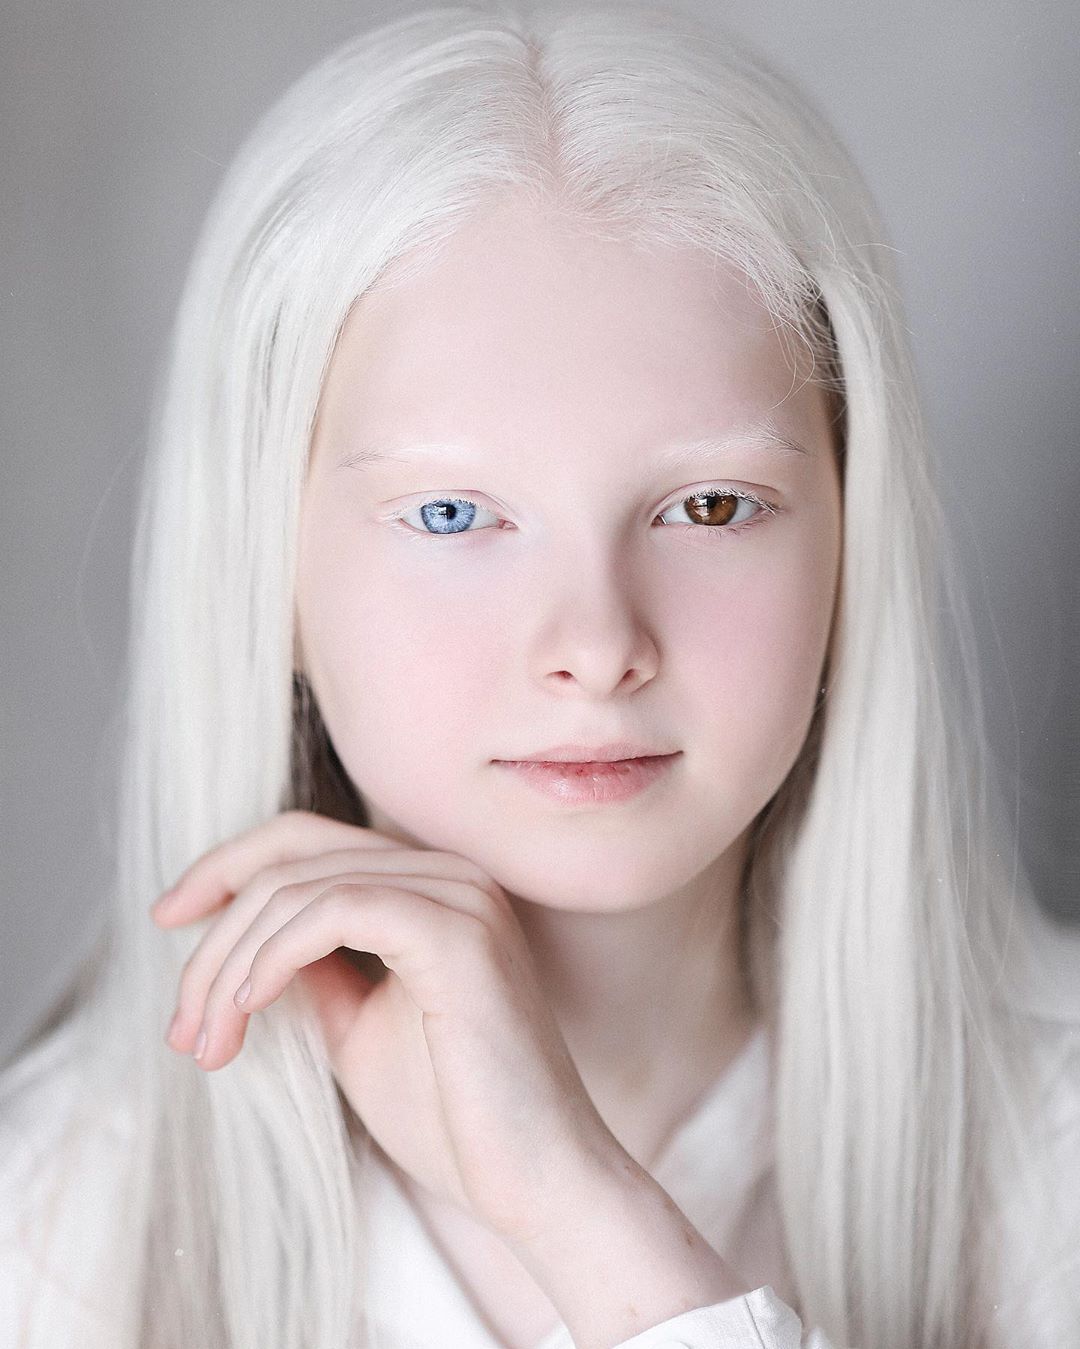 Garota chechena atordoa a Internet com sua beleza sobrenatural 05